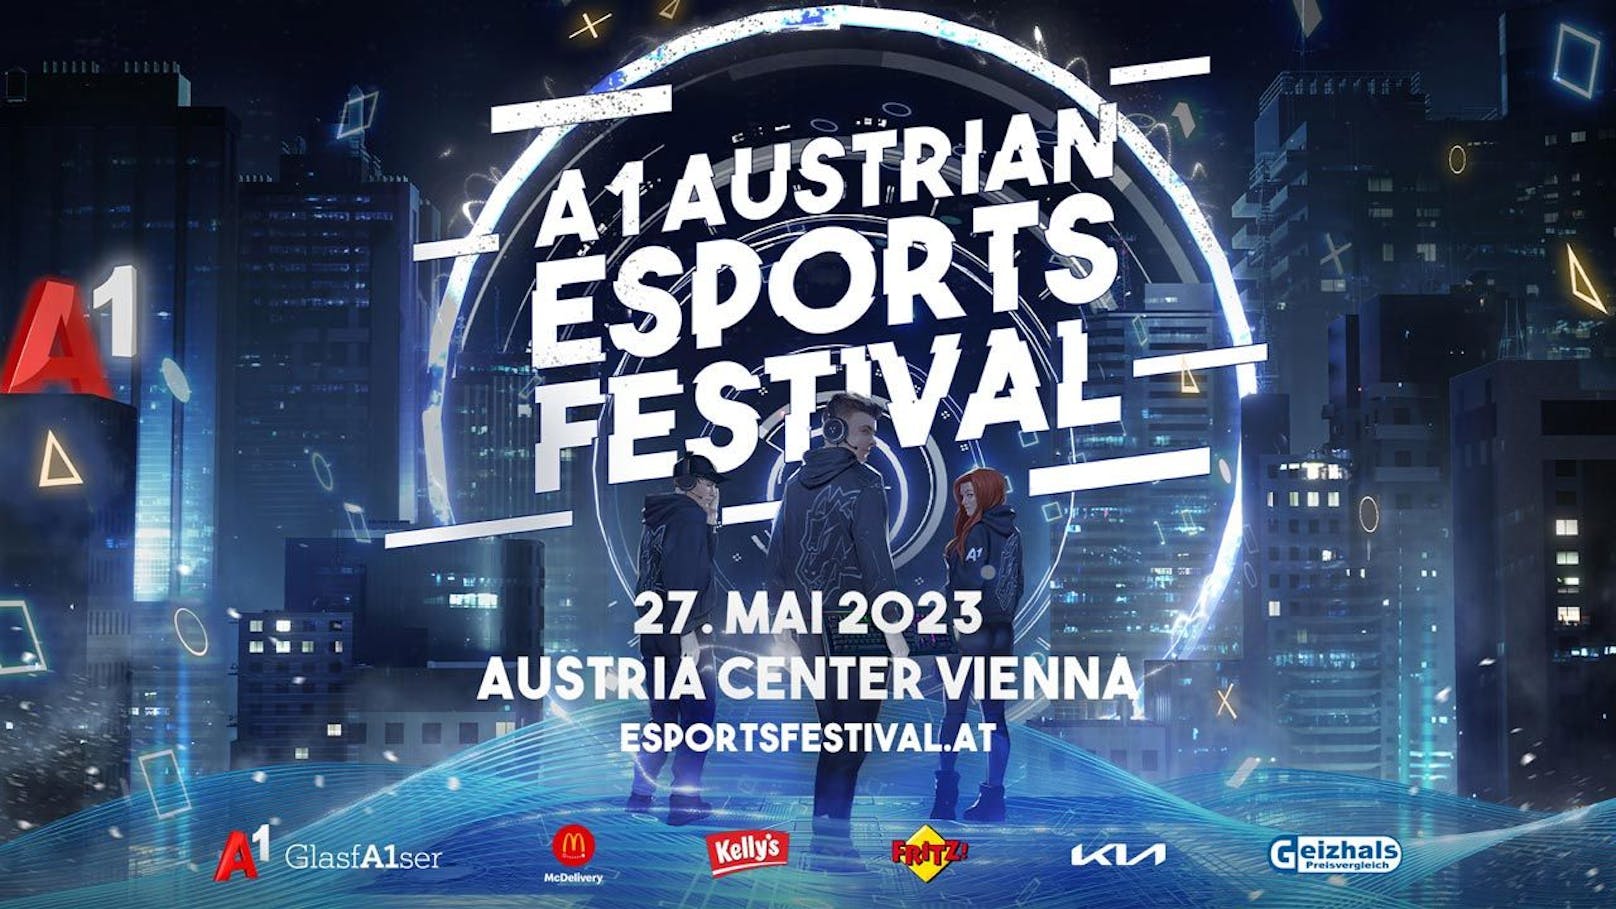 Die größte E-Sport Veranstaltung Österreichs im Austria Center Vienna am Samstag, dem 27. Mai ab 11 Uhr.